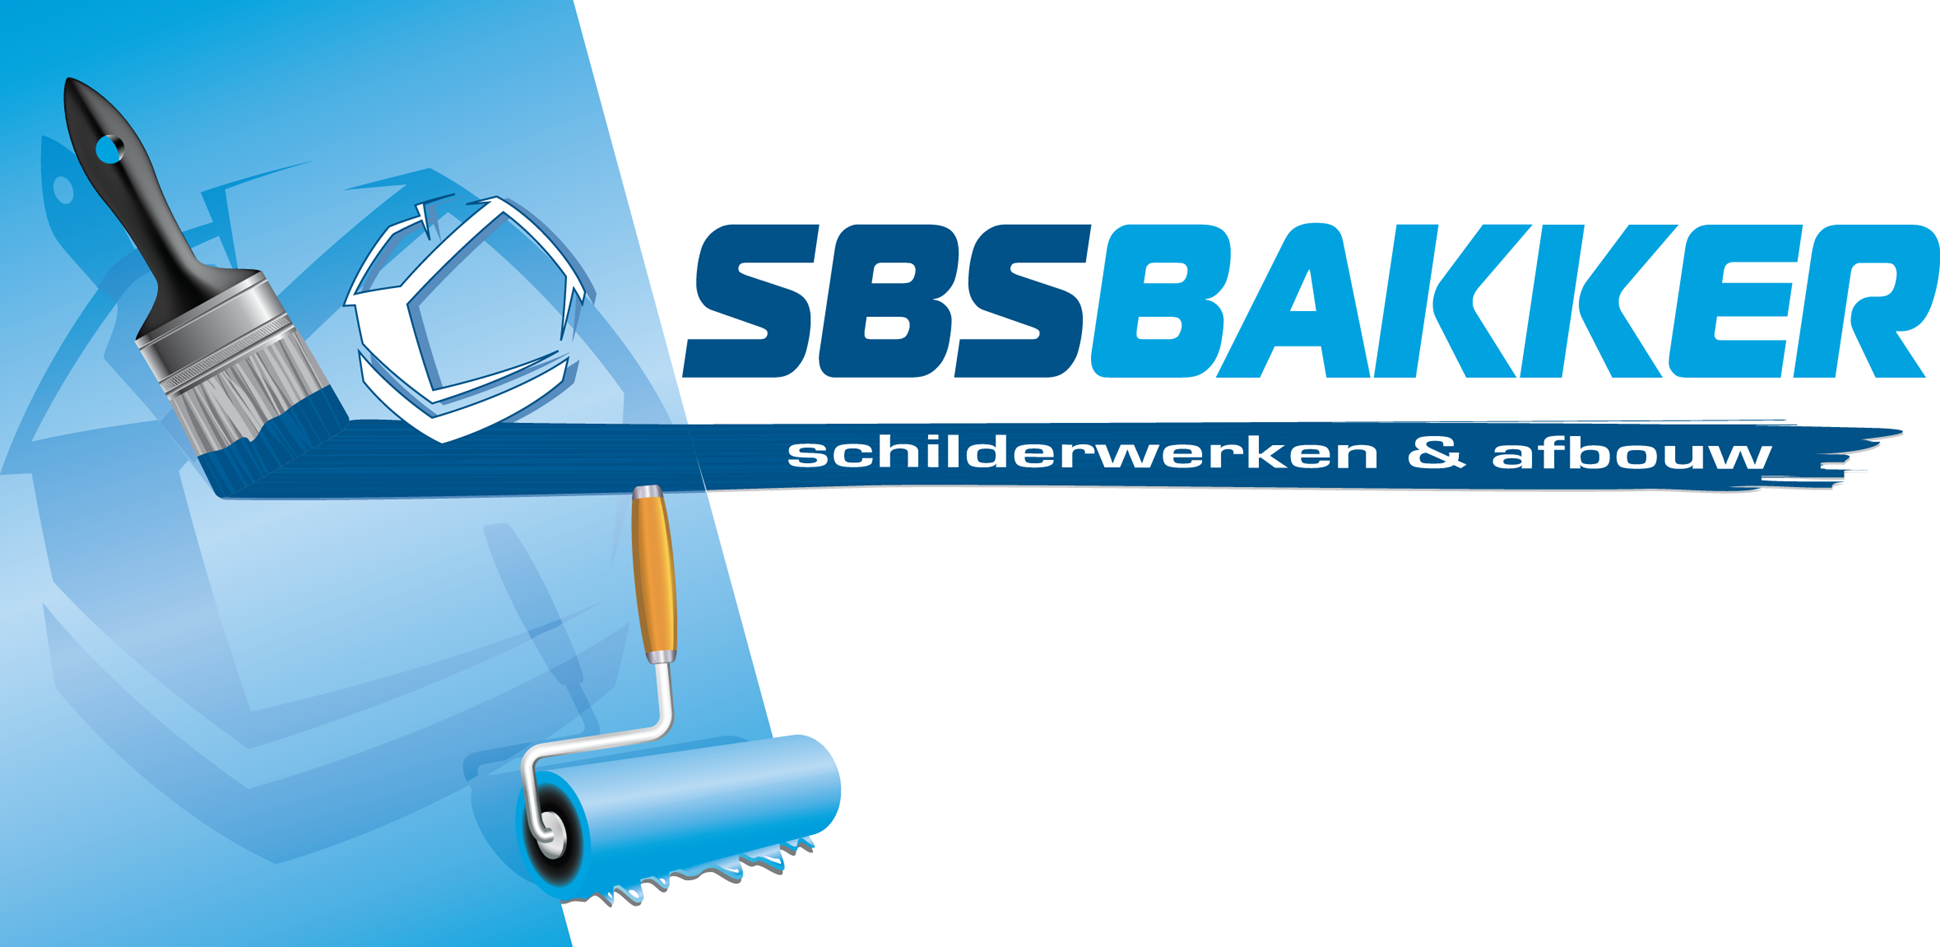 SBS Bakker Schilderwerken & Afbouw